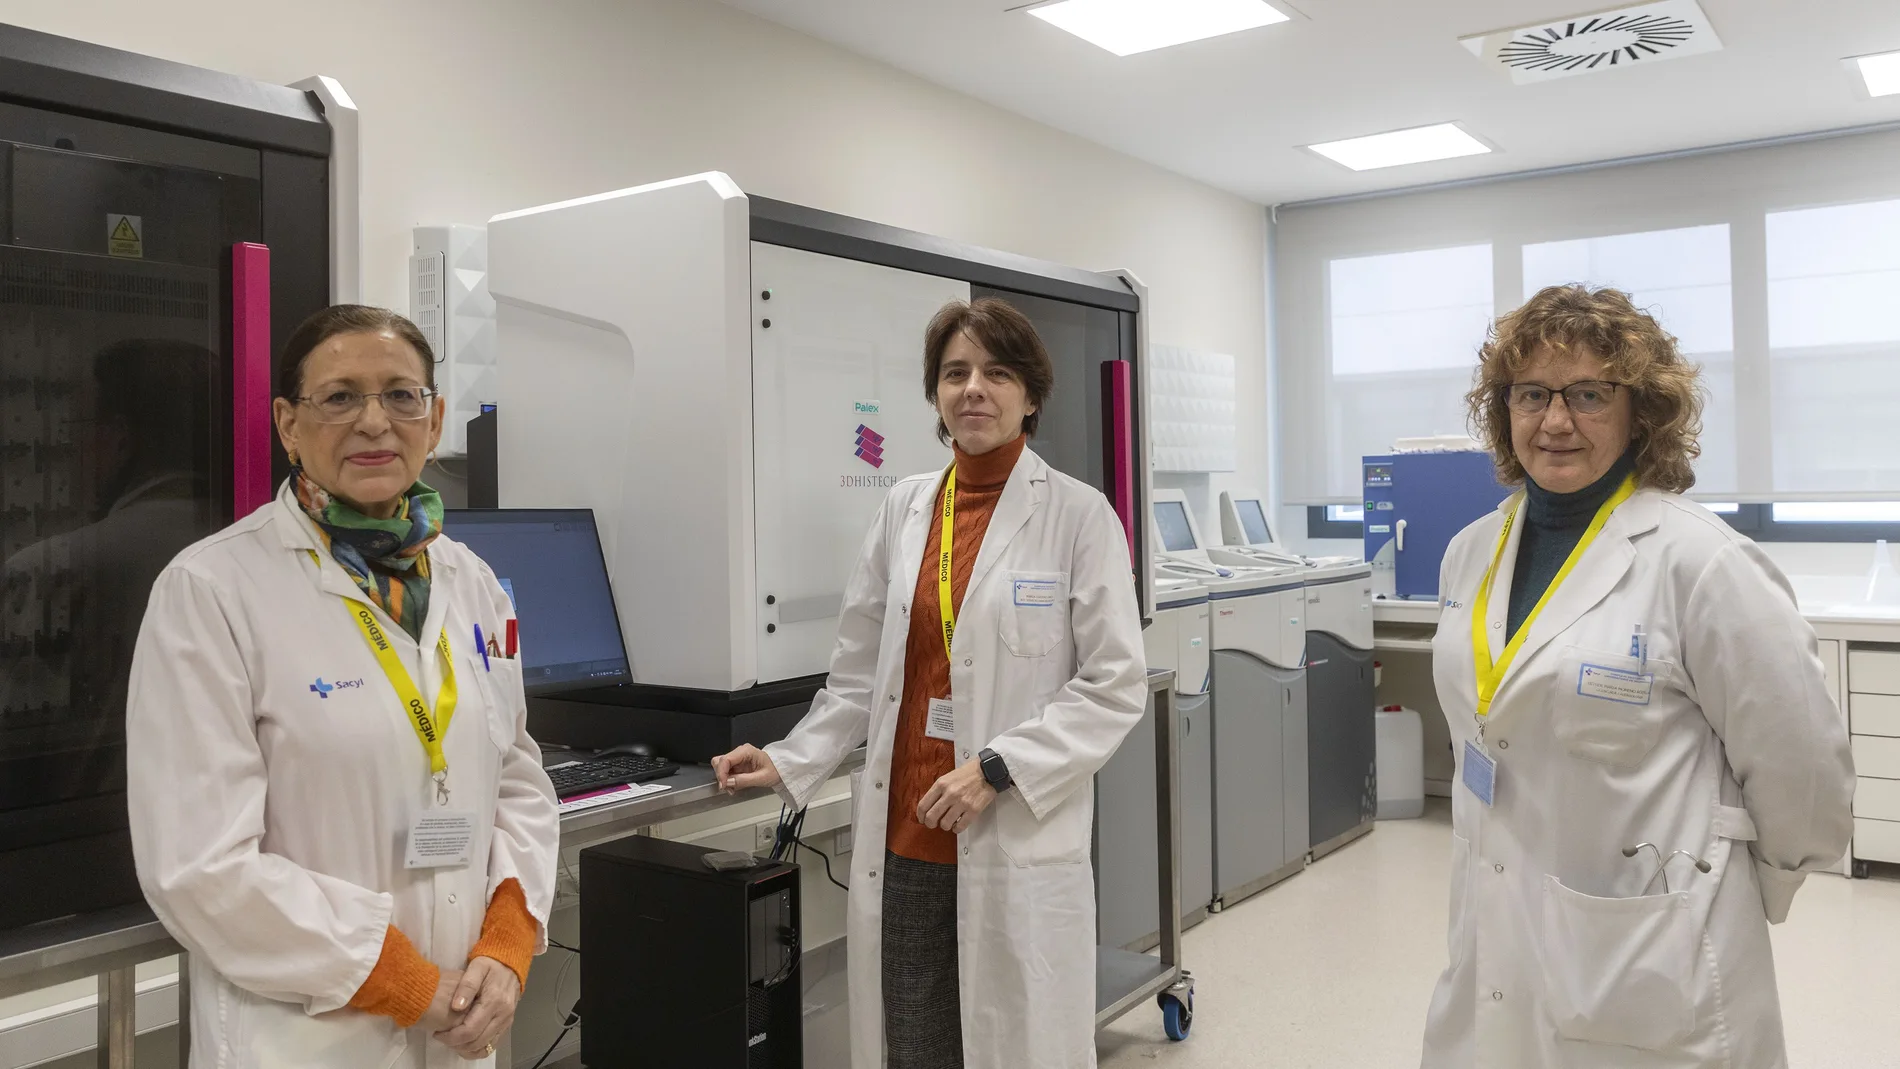 Las doctoras María Isidoro, Esther Mª Moreno y Mª Dolores Ludeña, del Complejo Asistencial de Salamanca